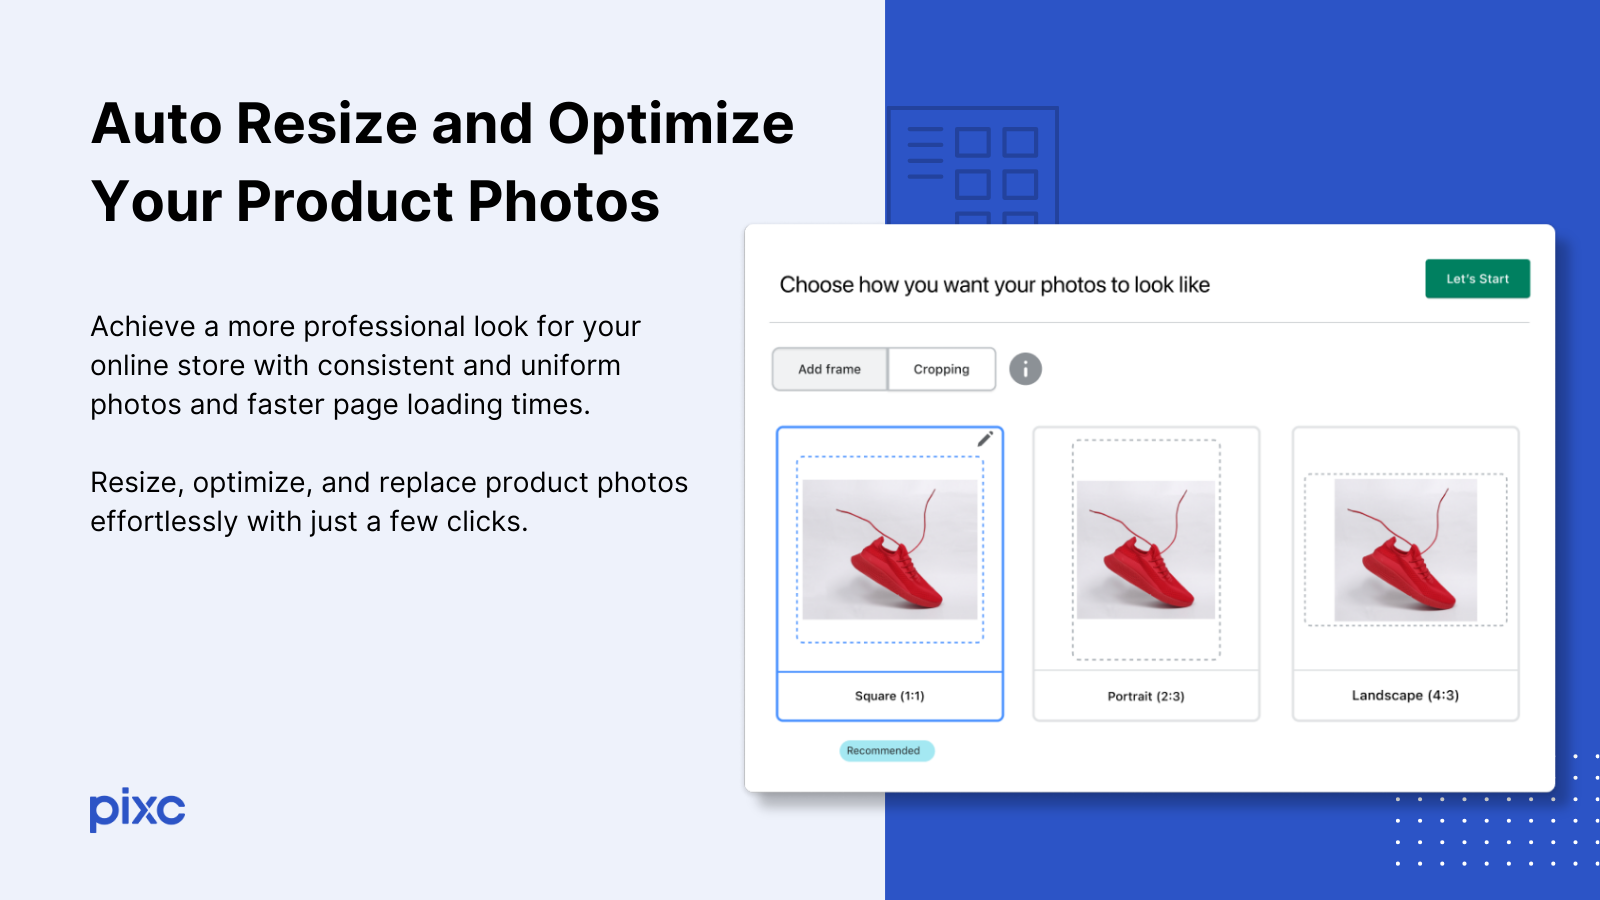 Redimensione e otimize automaticamente suas fotos de produtos